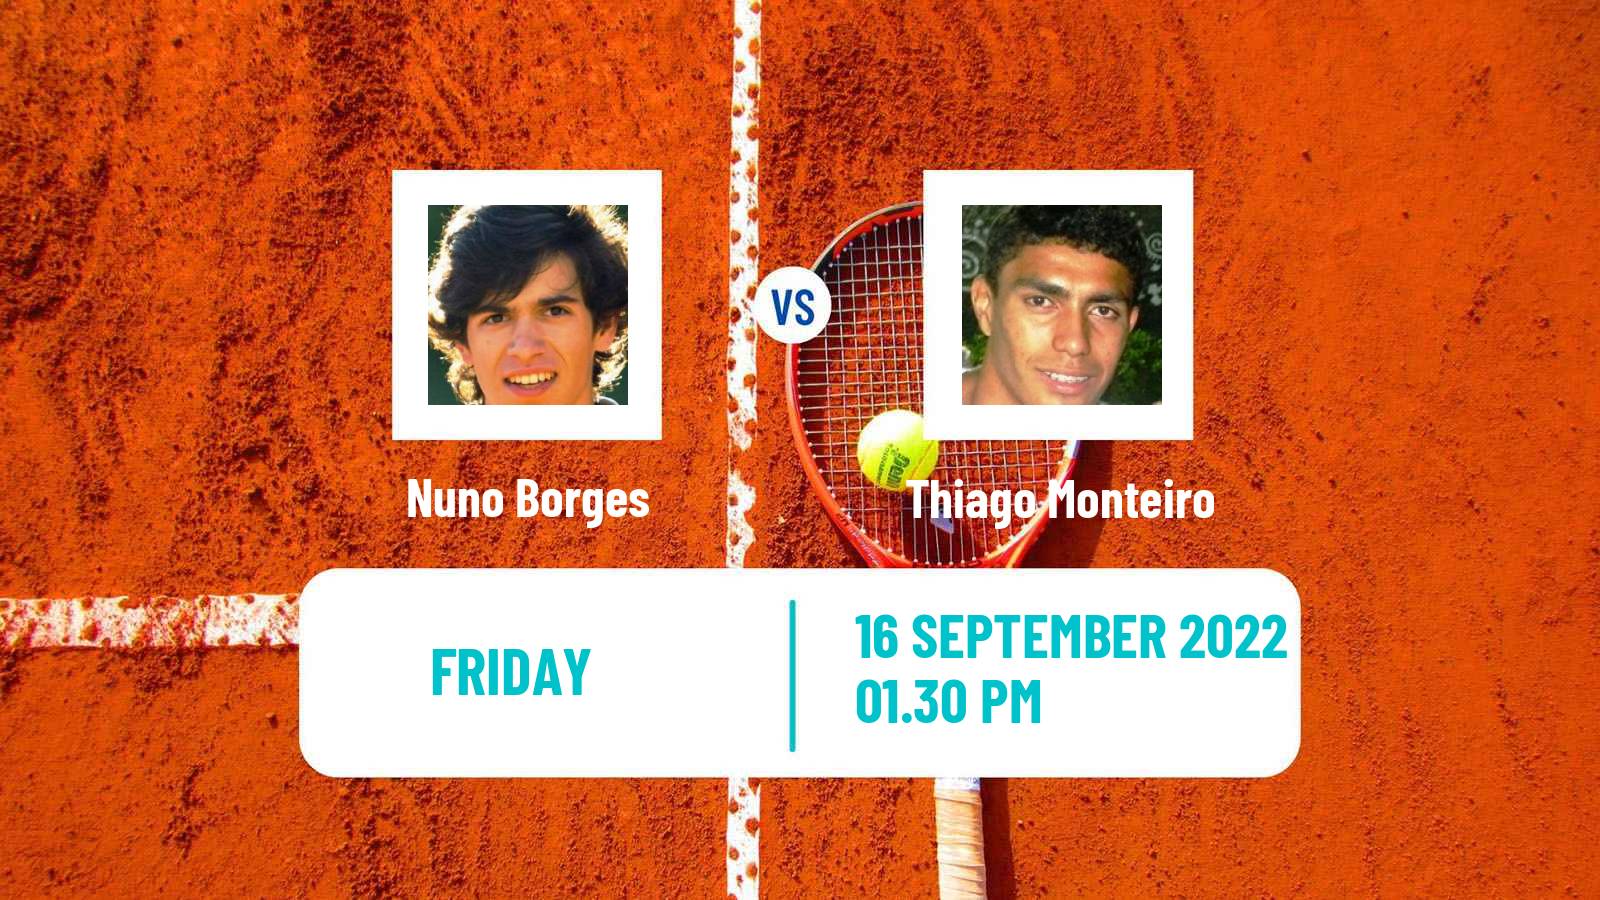 Tennis Davis Cup World Group I Nuno Borges - Thiago Monteiro